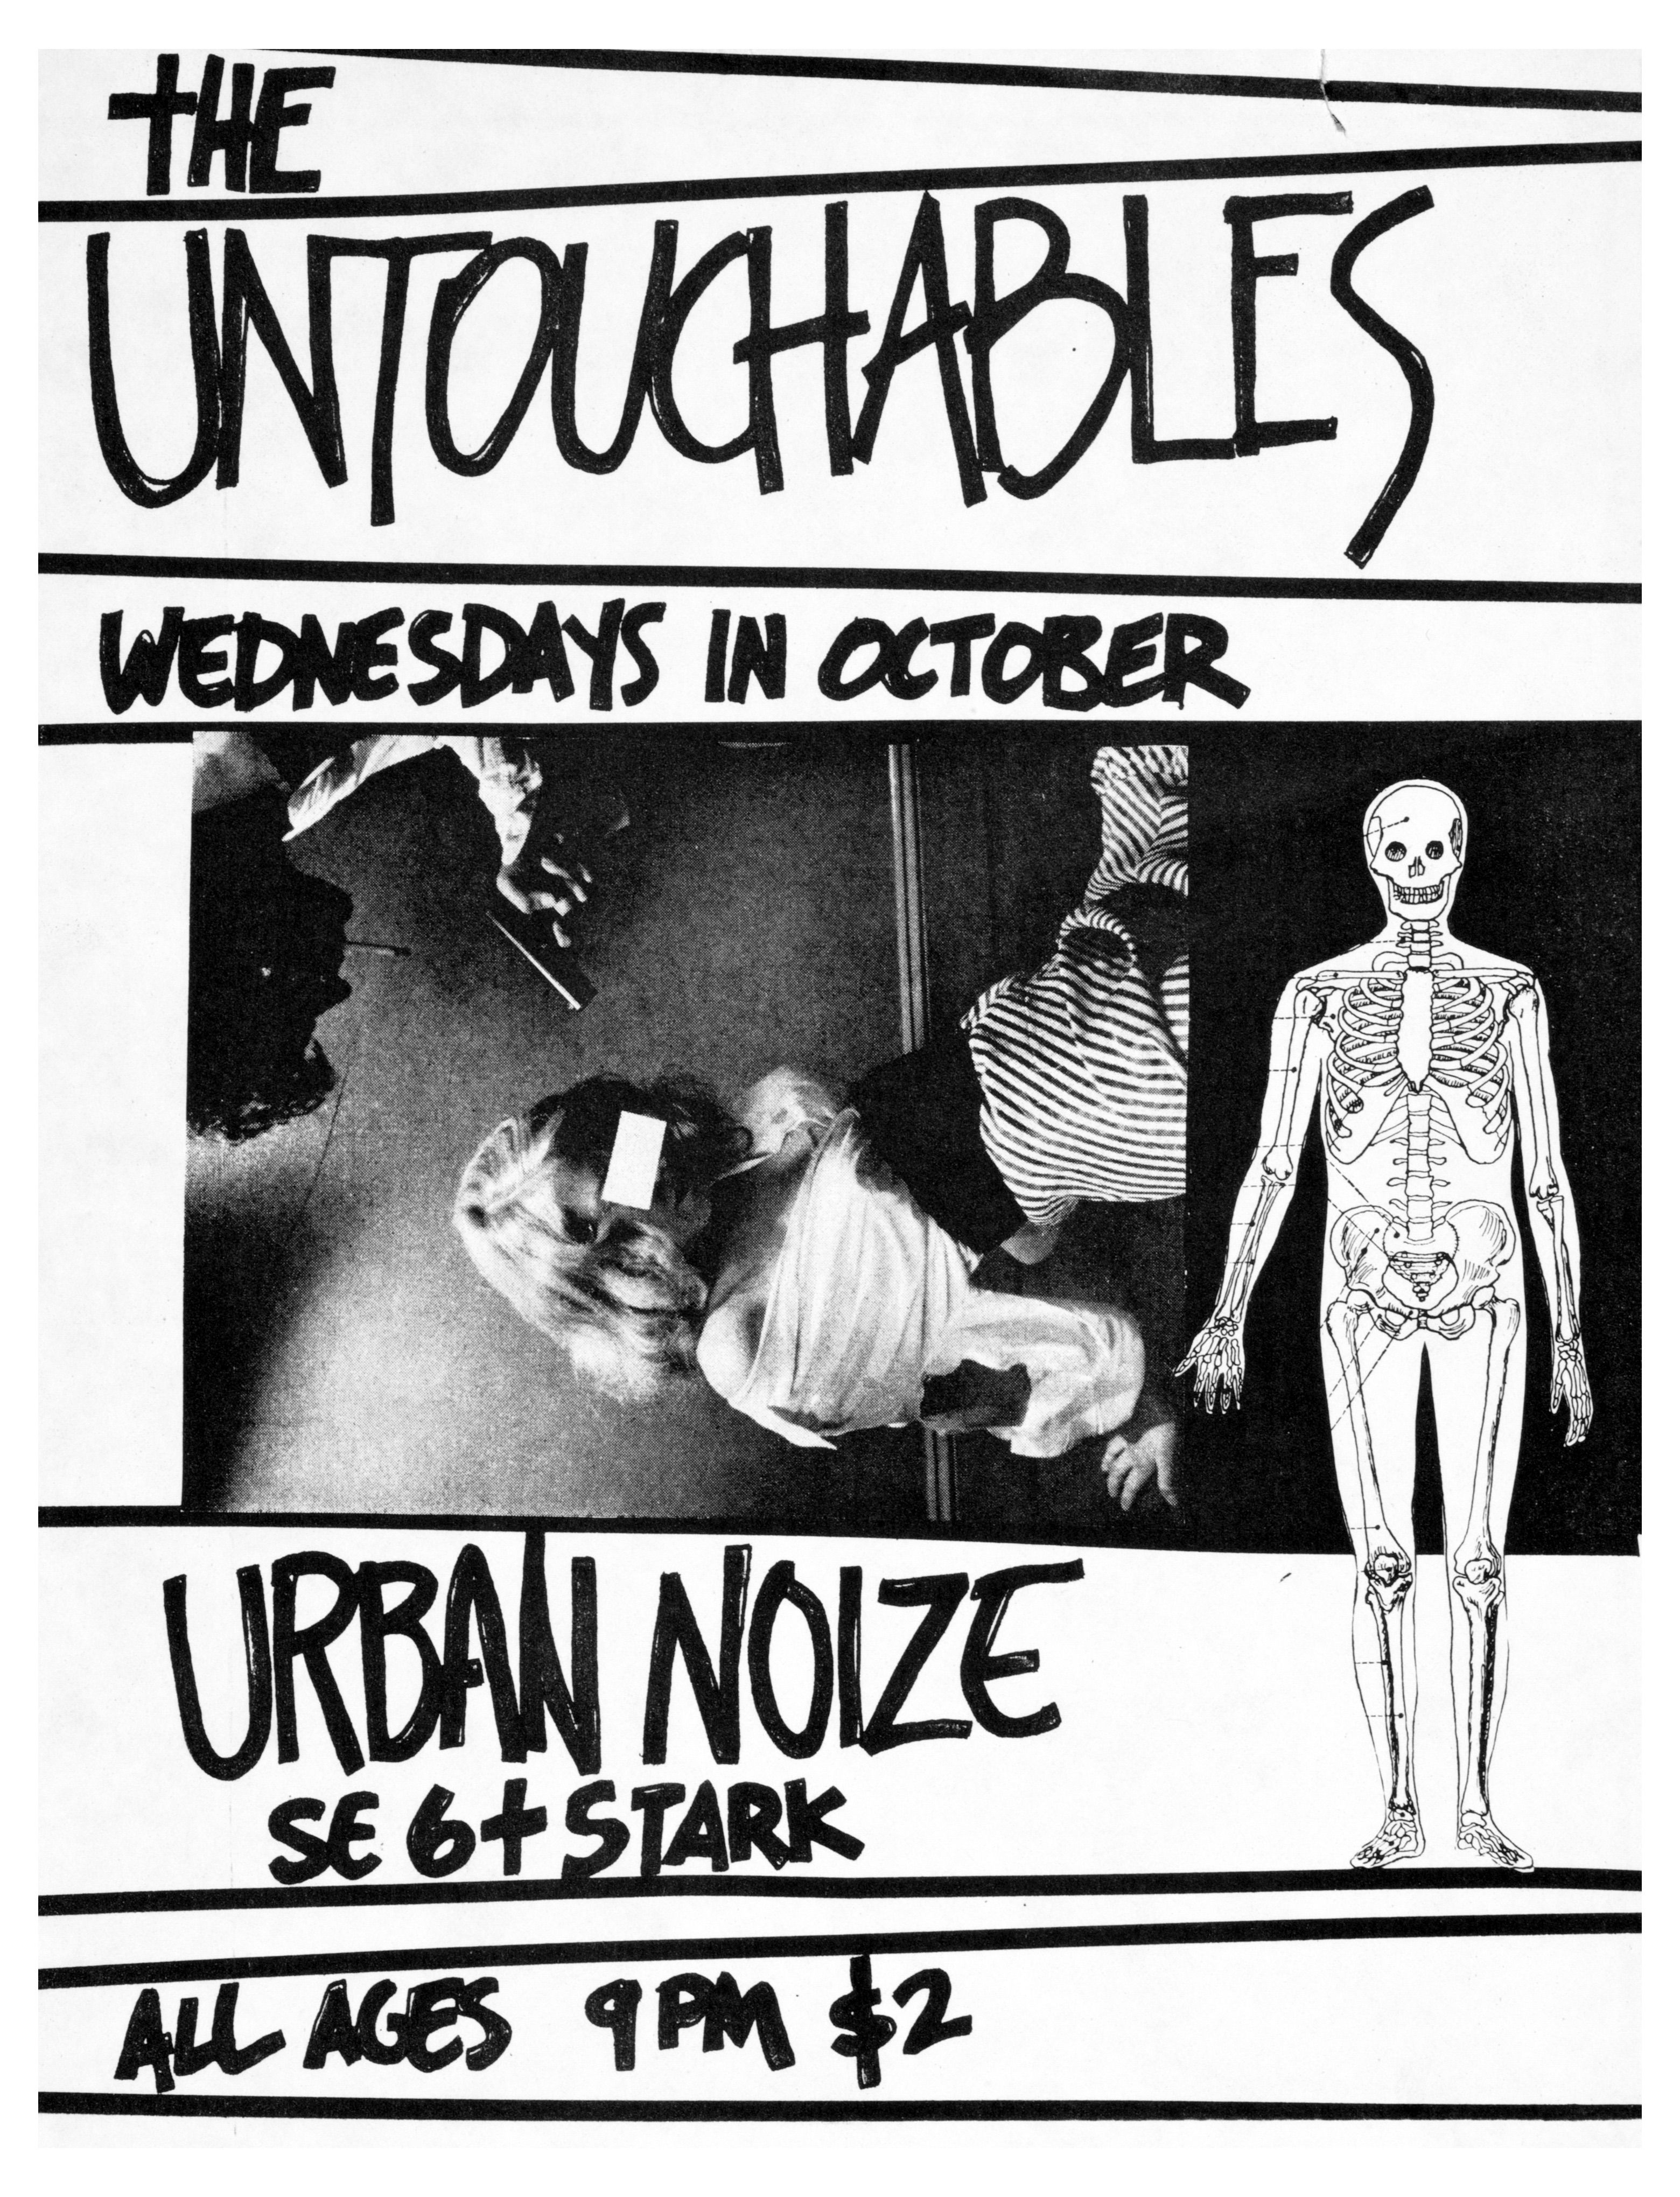 MXP-43.7 Untouchables 1980 Urban Noize  Oct 12 Concert Poster